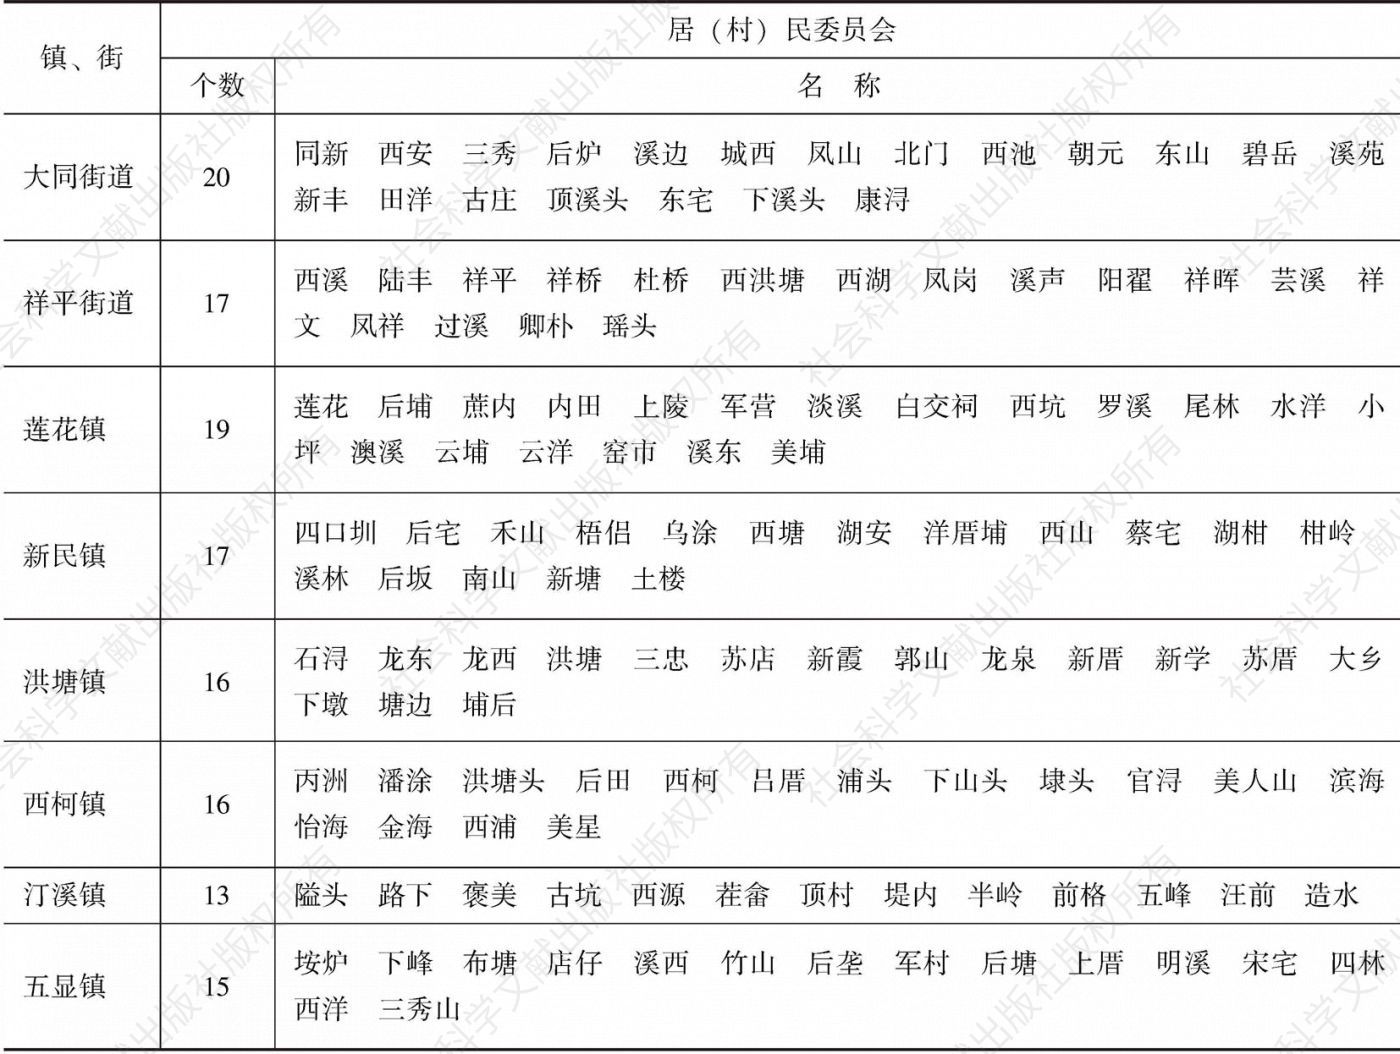 表2-5 2015年12月同安区行政区划表